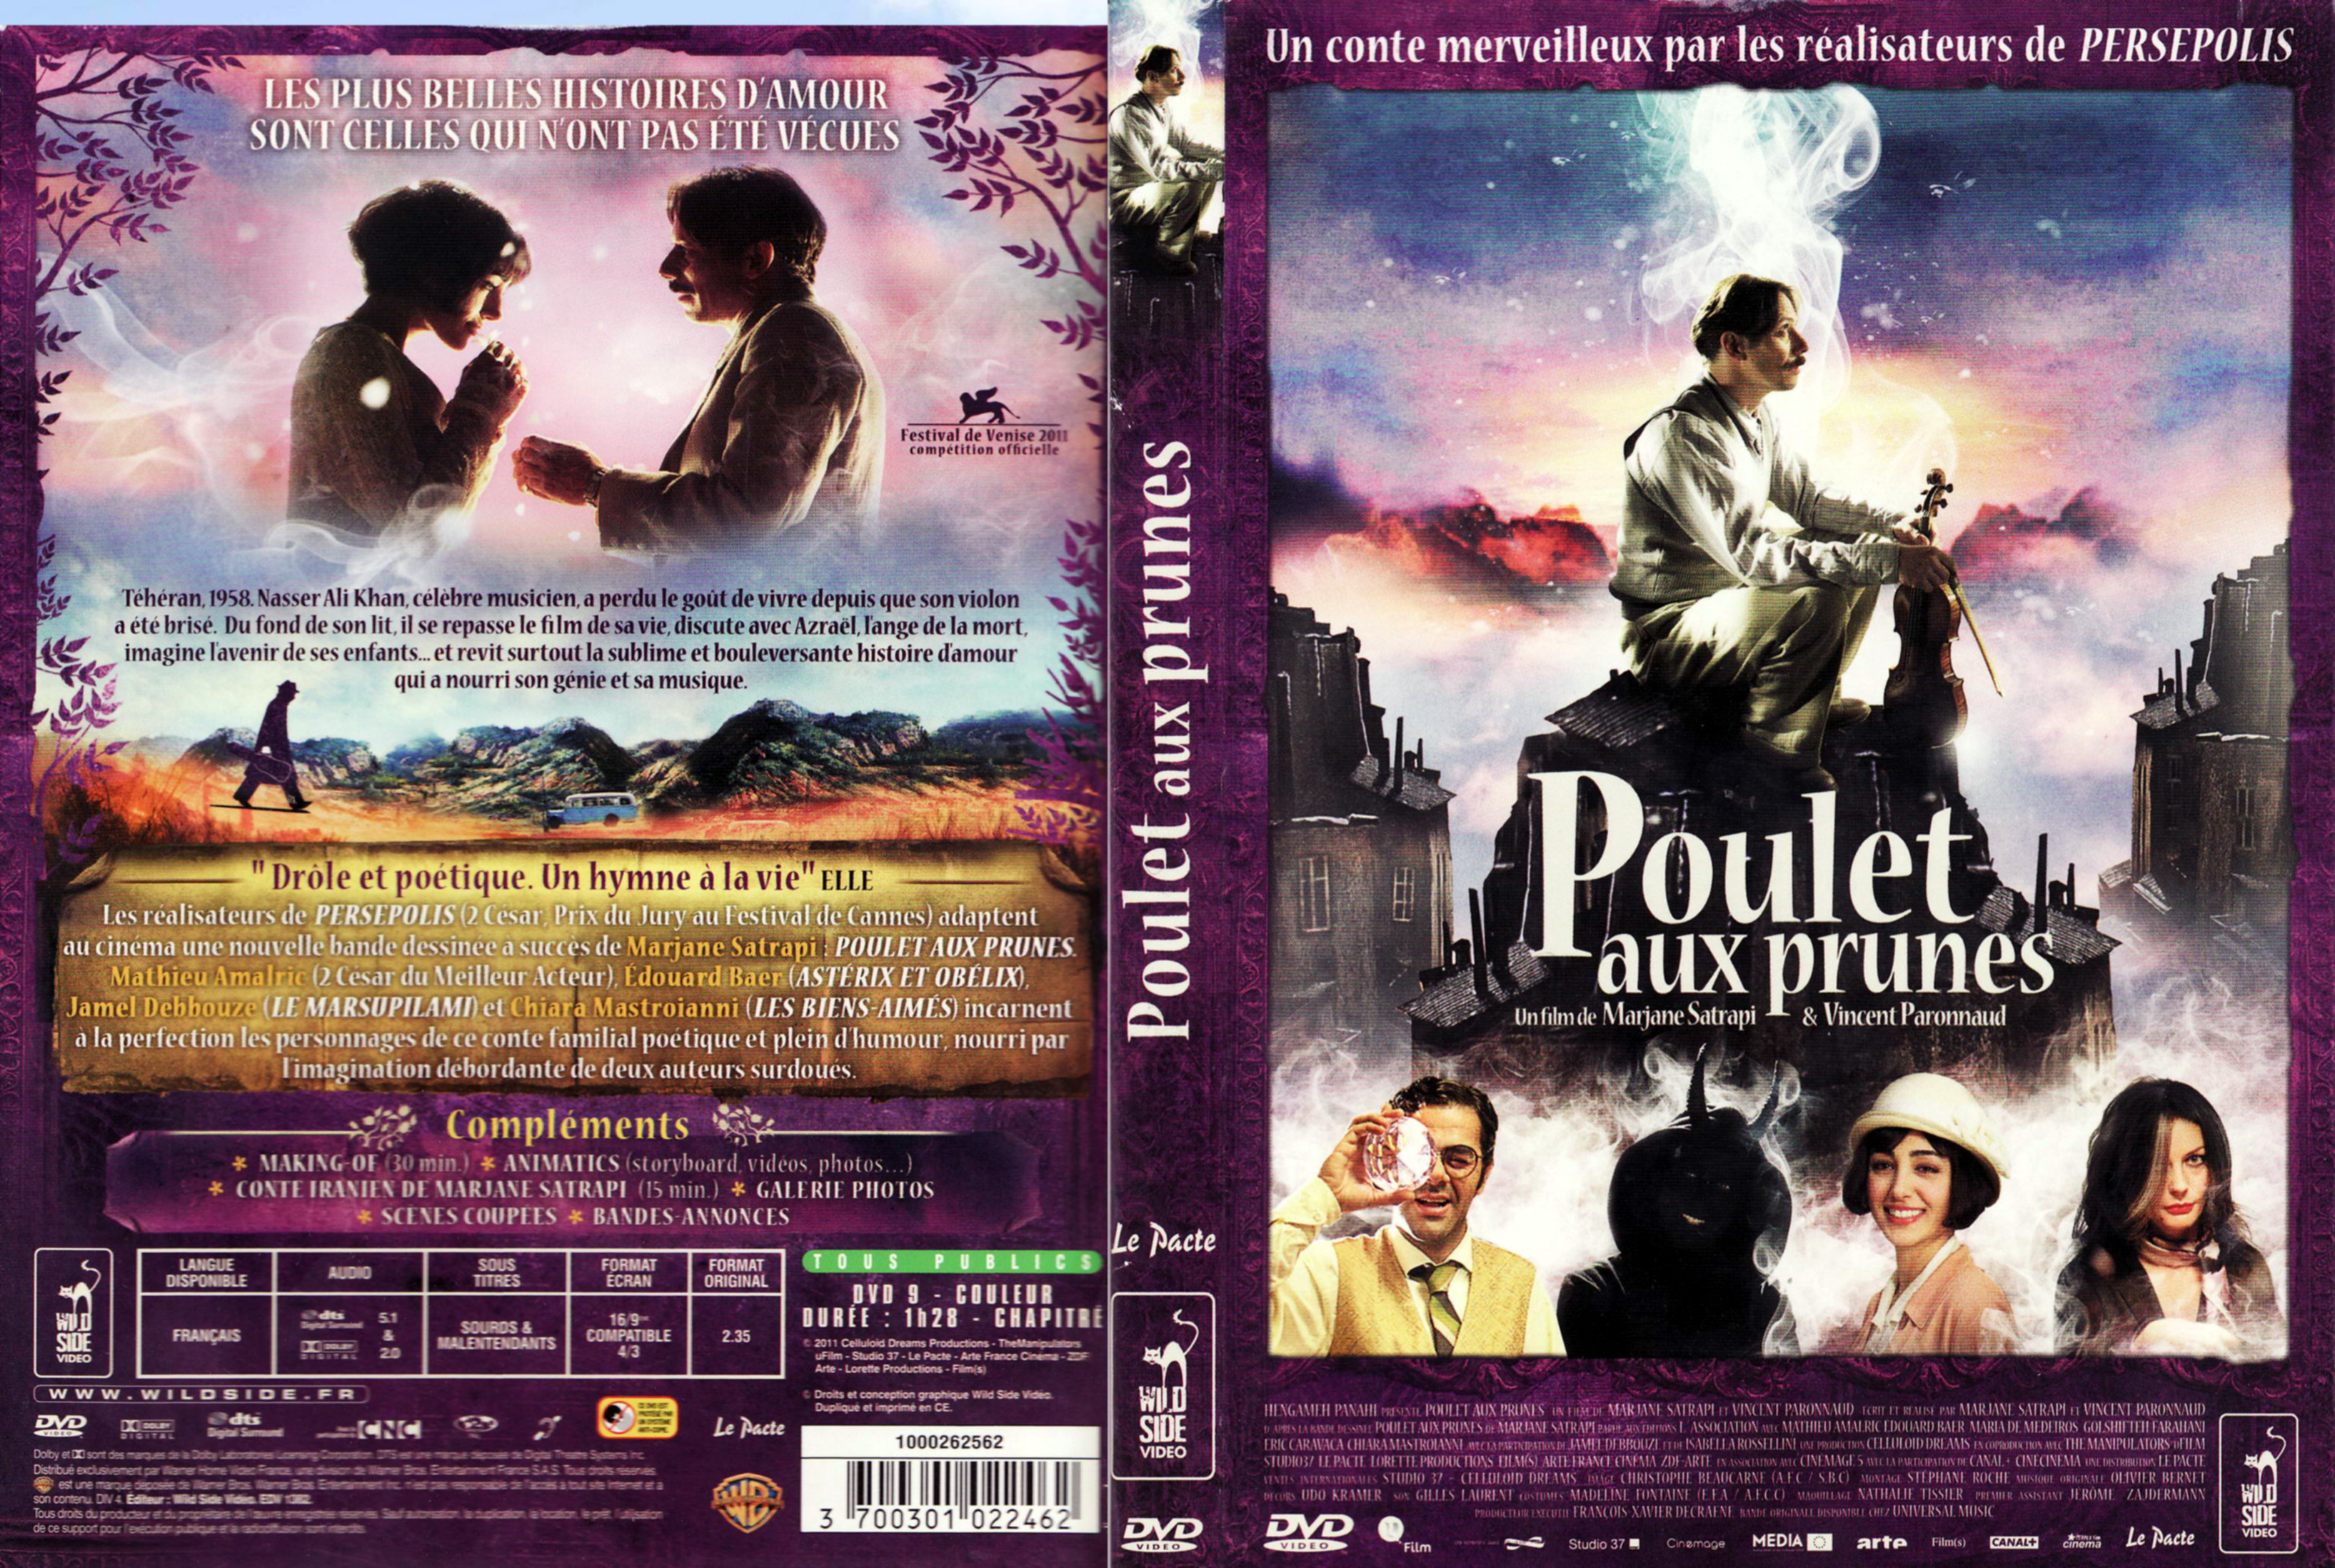 Jaquette DVD Poulet aux prunes